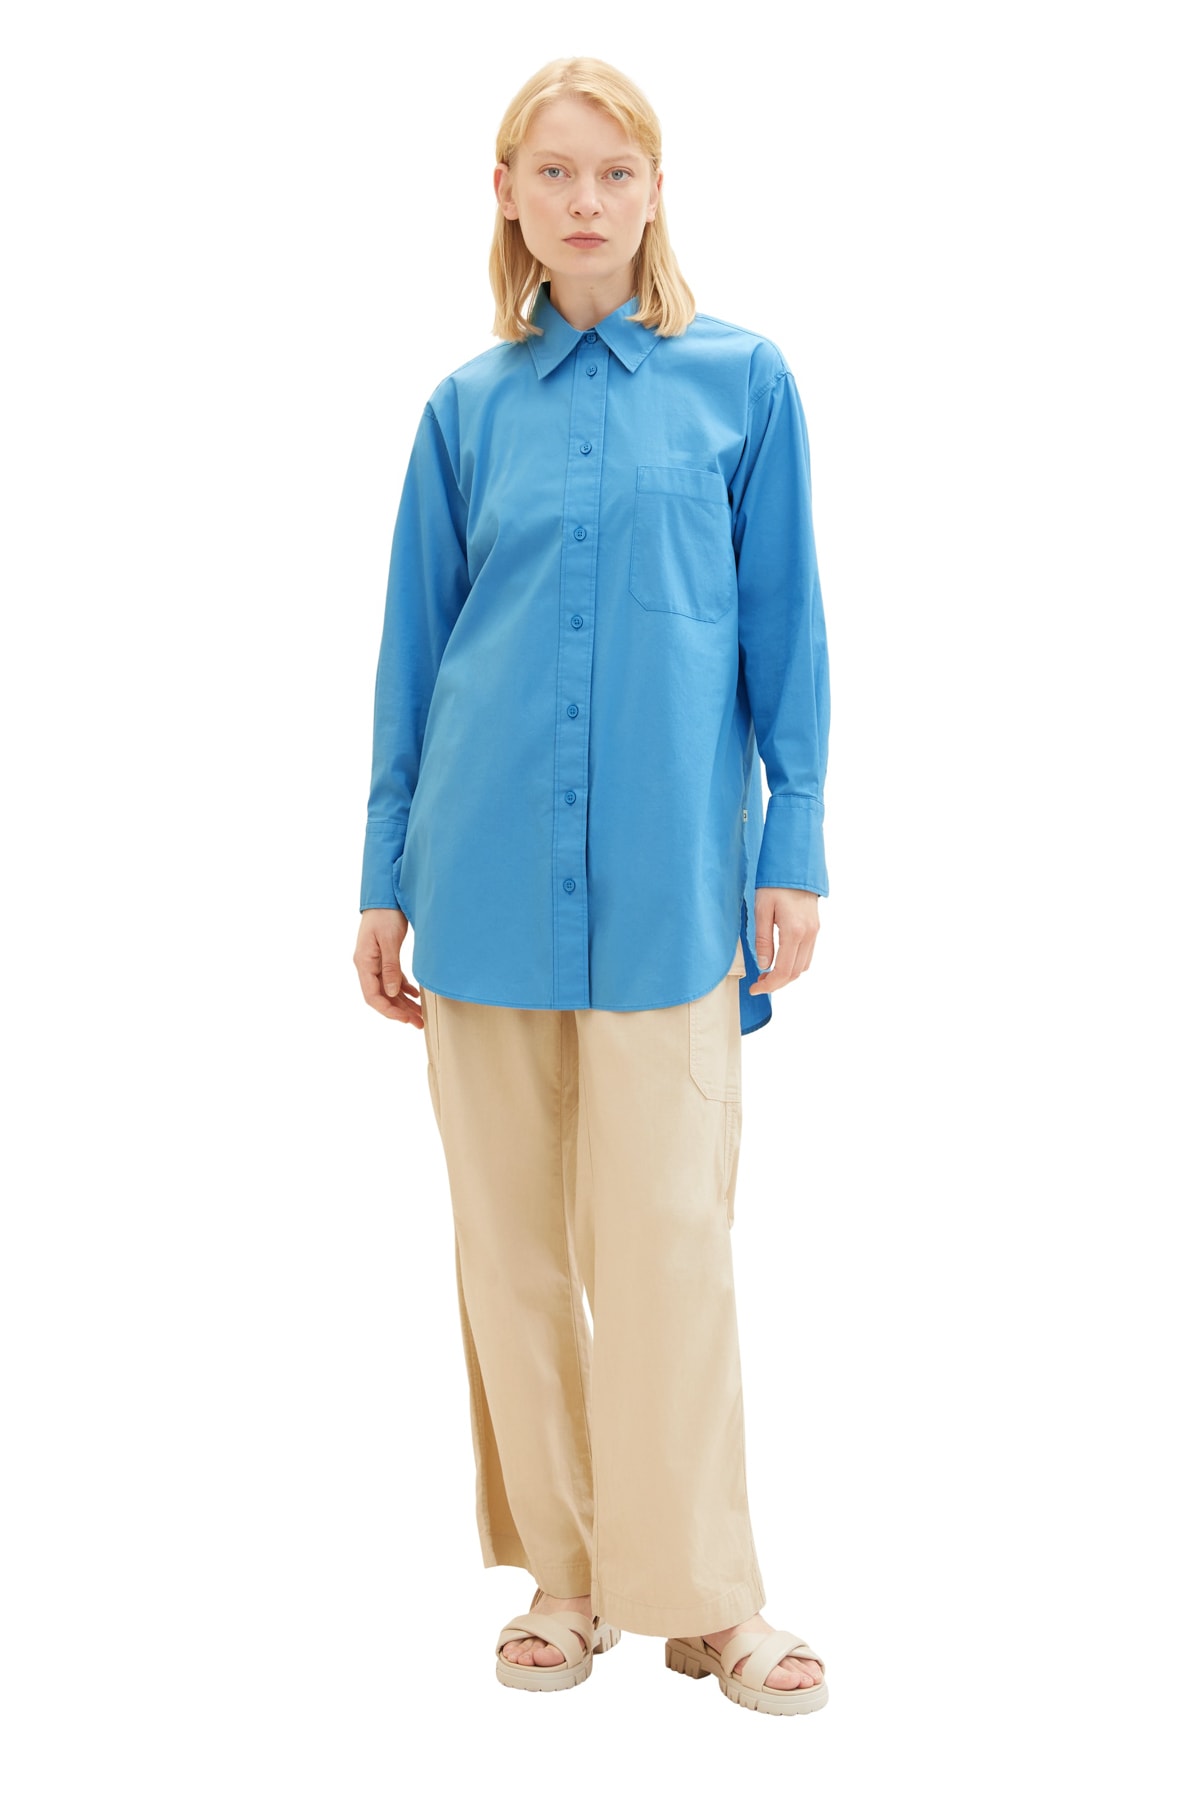 Рубашка Женская/Девочка водный спорт синяя Tom Tailor Denim, синий худи tom tailor средней длины размер s синий